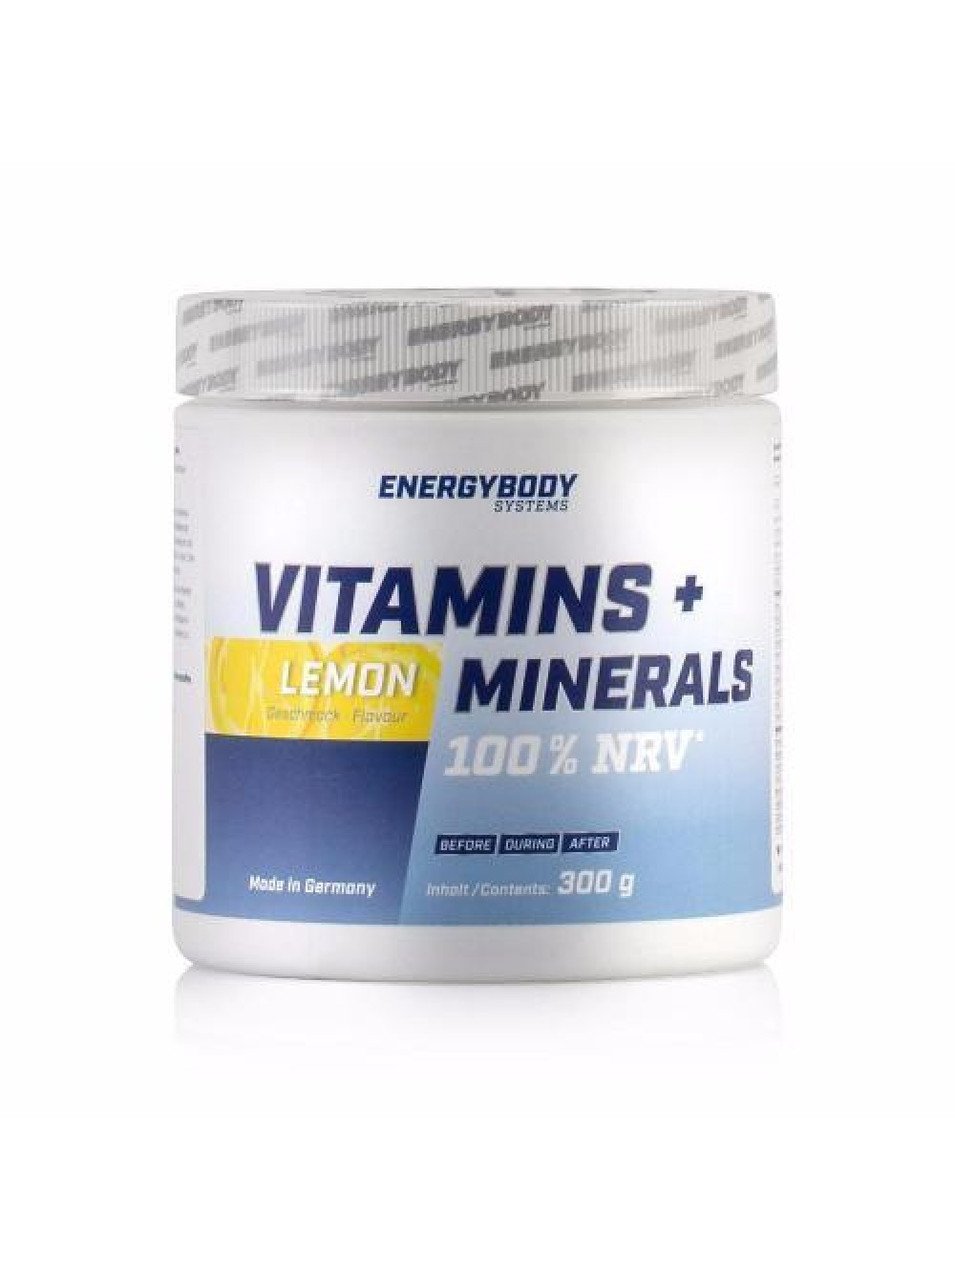 Комплекс витаминов Energy Body Vitamins + Minerals (300 г) lemon,  мл, Energybody. Витаминно-минеральный комплекс. Поддержание здоровья Укрепление иммунитета 